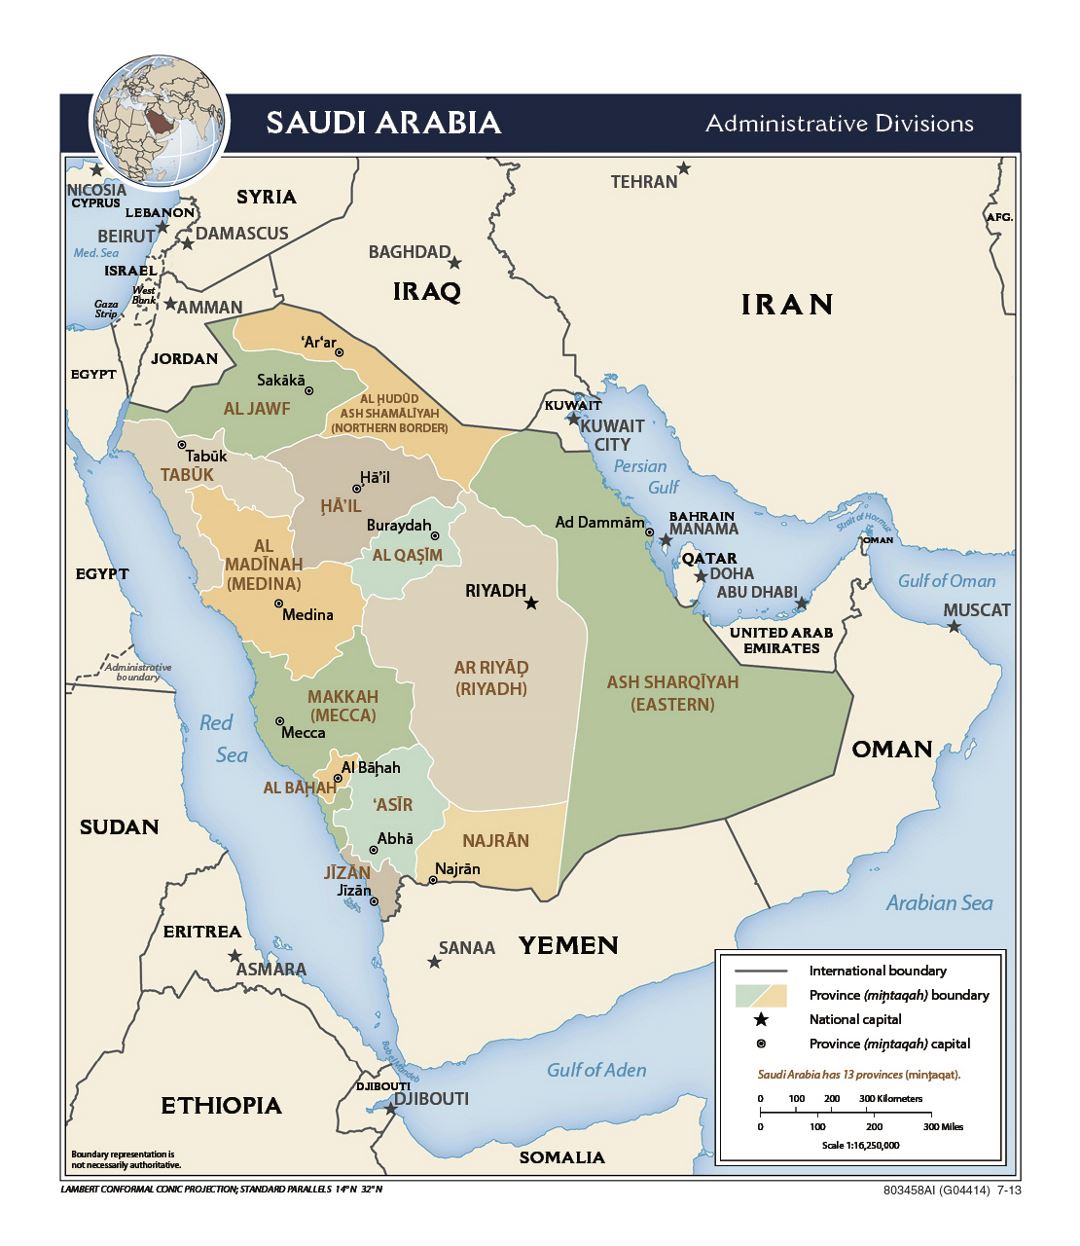 Detallado mapa de administrativas divisiones de Arabia Saudita - 2013